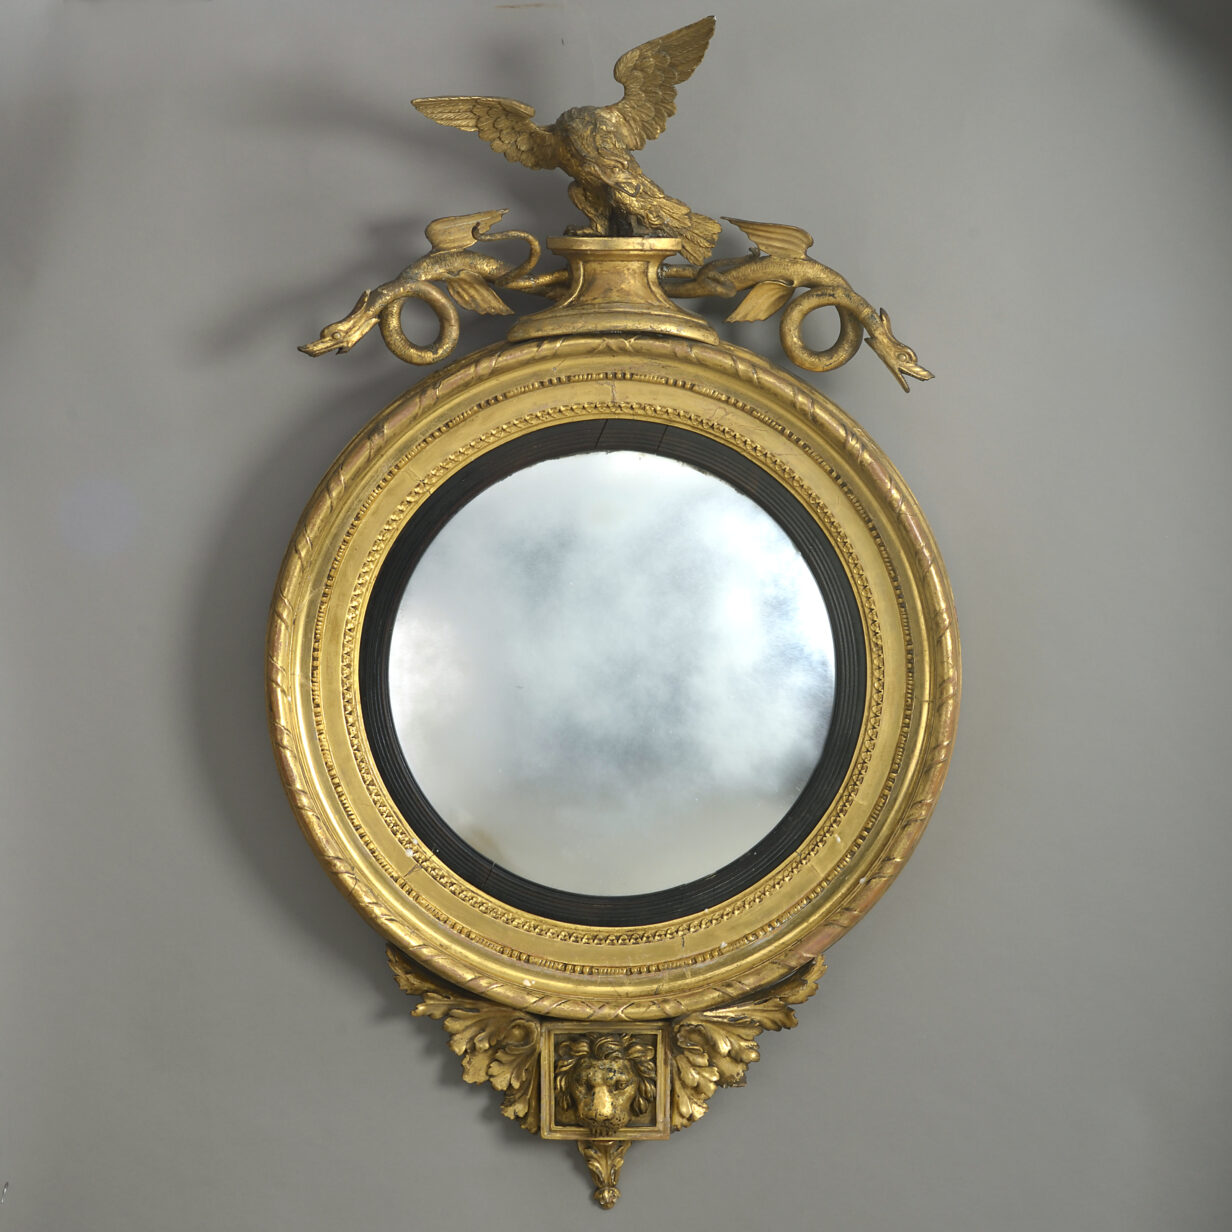 Regency convex mirror